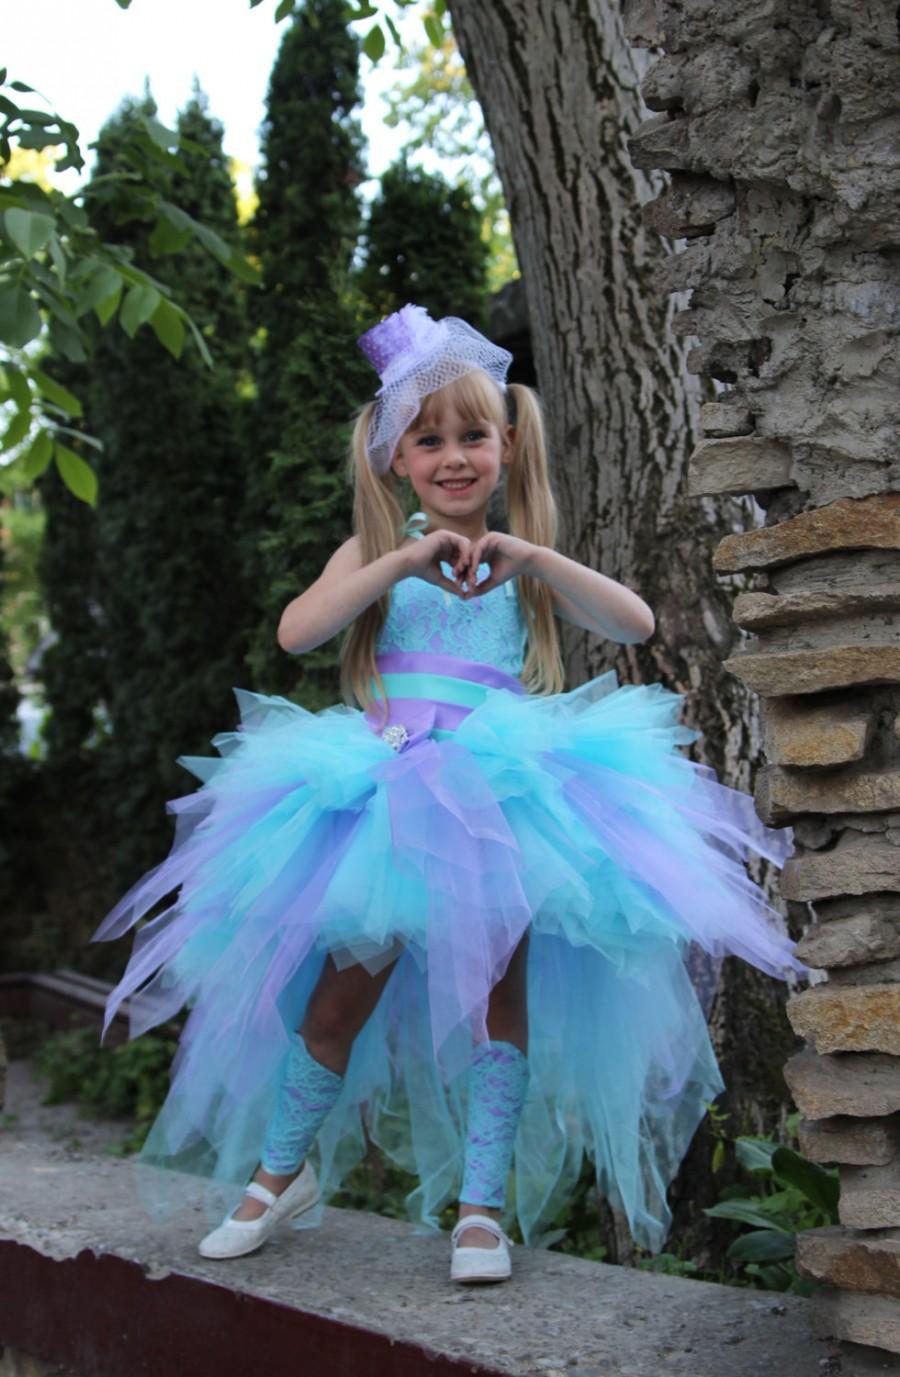 Wedding - Lilac Blue Flower Girl Dress - Tutu Birthday Holiday Aqua Blue Lilac Wedding Party Flower Girl Dress